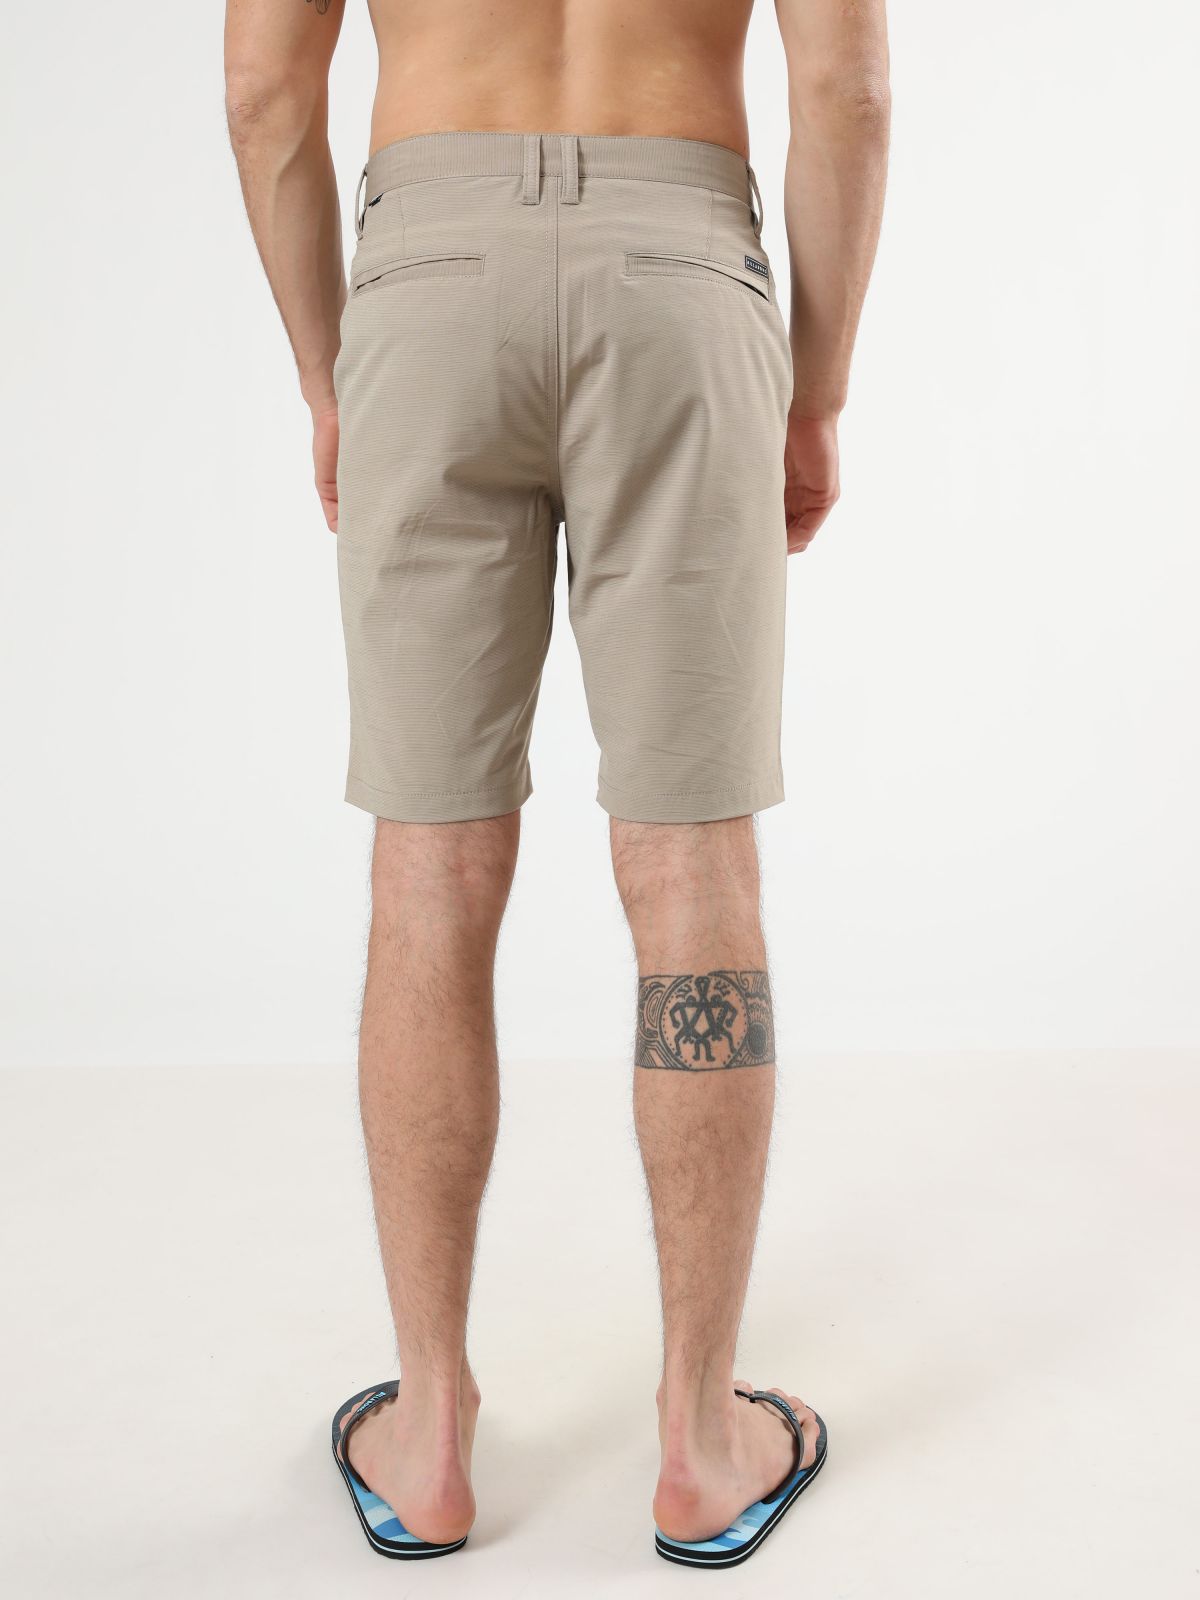  מכנסיים קצרים עם תבליט לוגו של BILLABONG